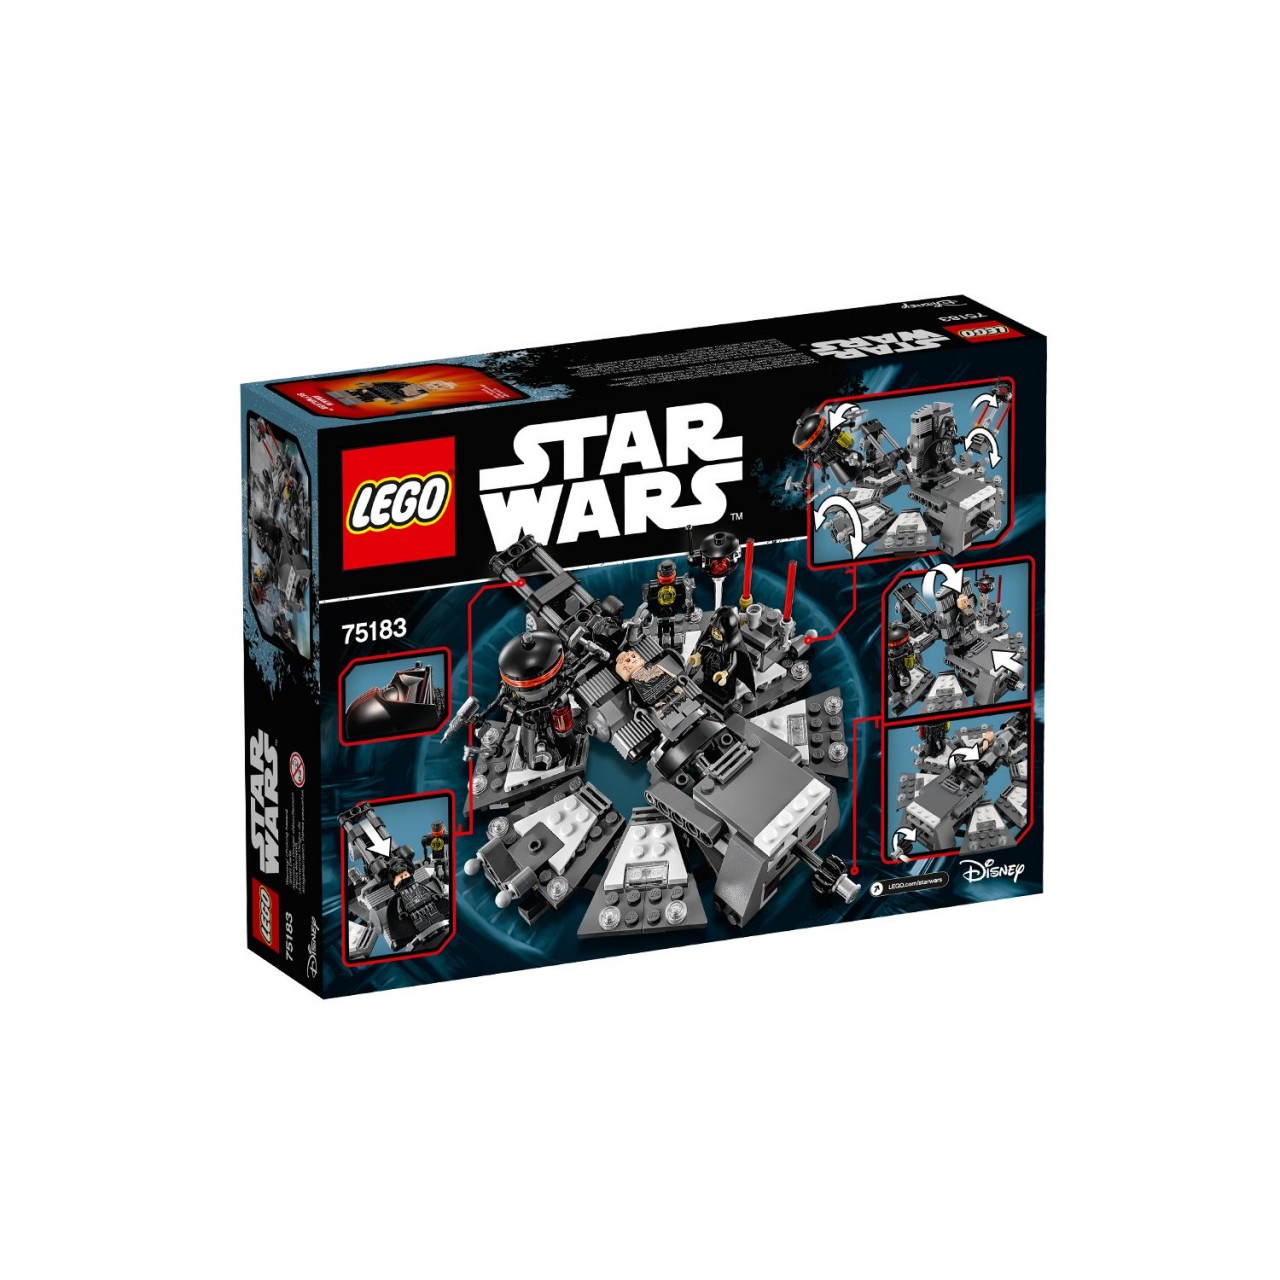 LEGO STAR WARS 75183 Darth Vader Transformation